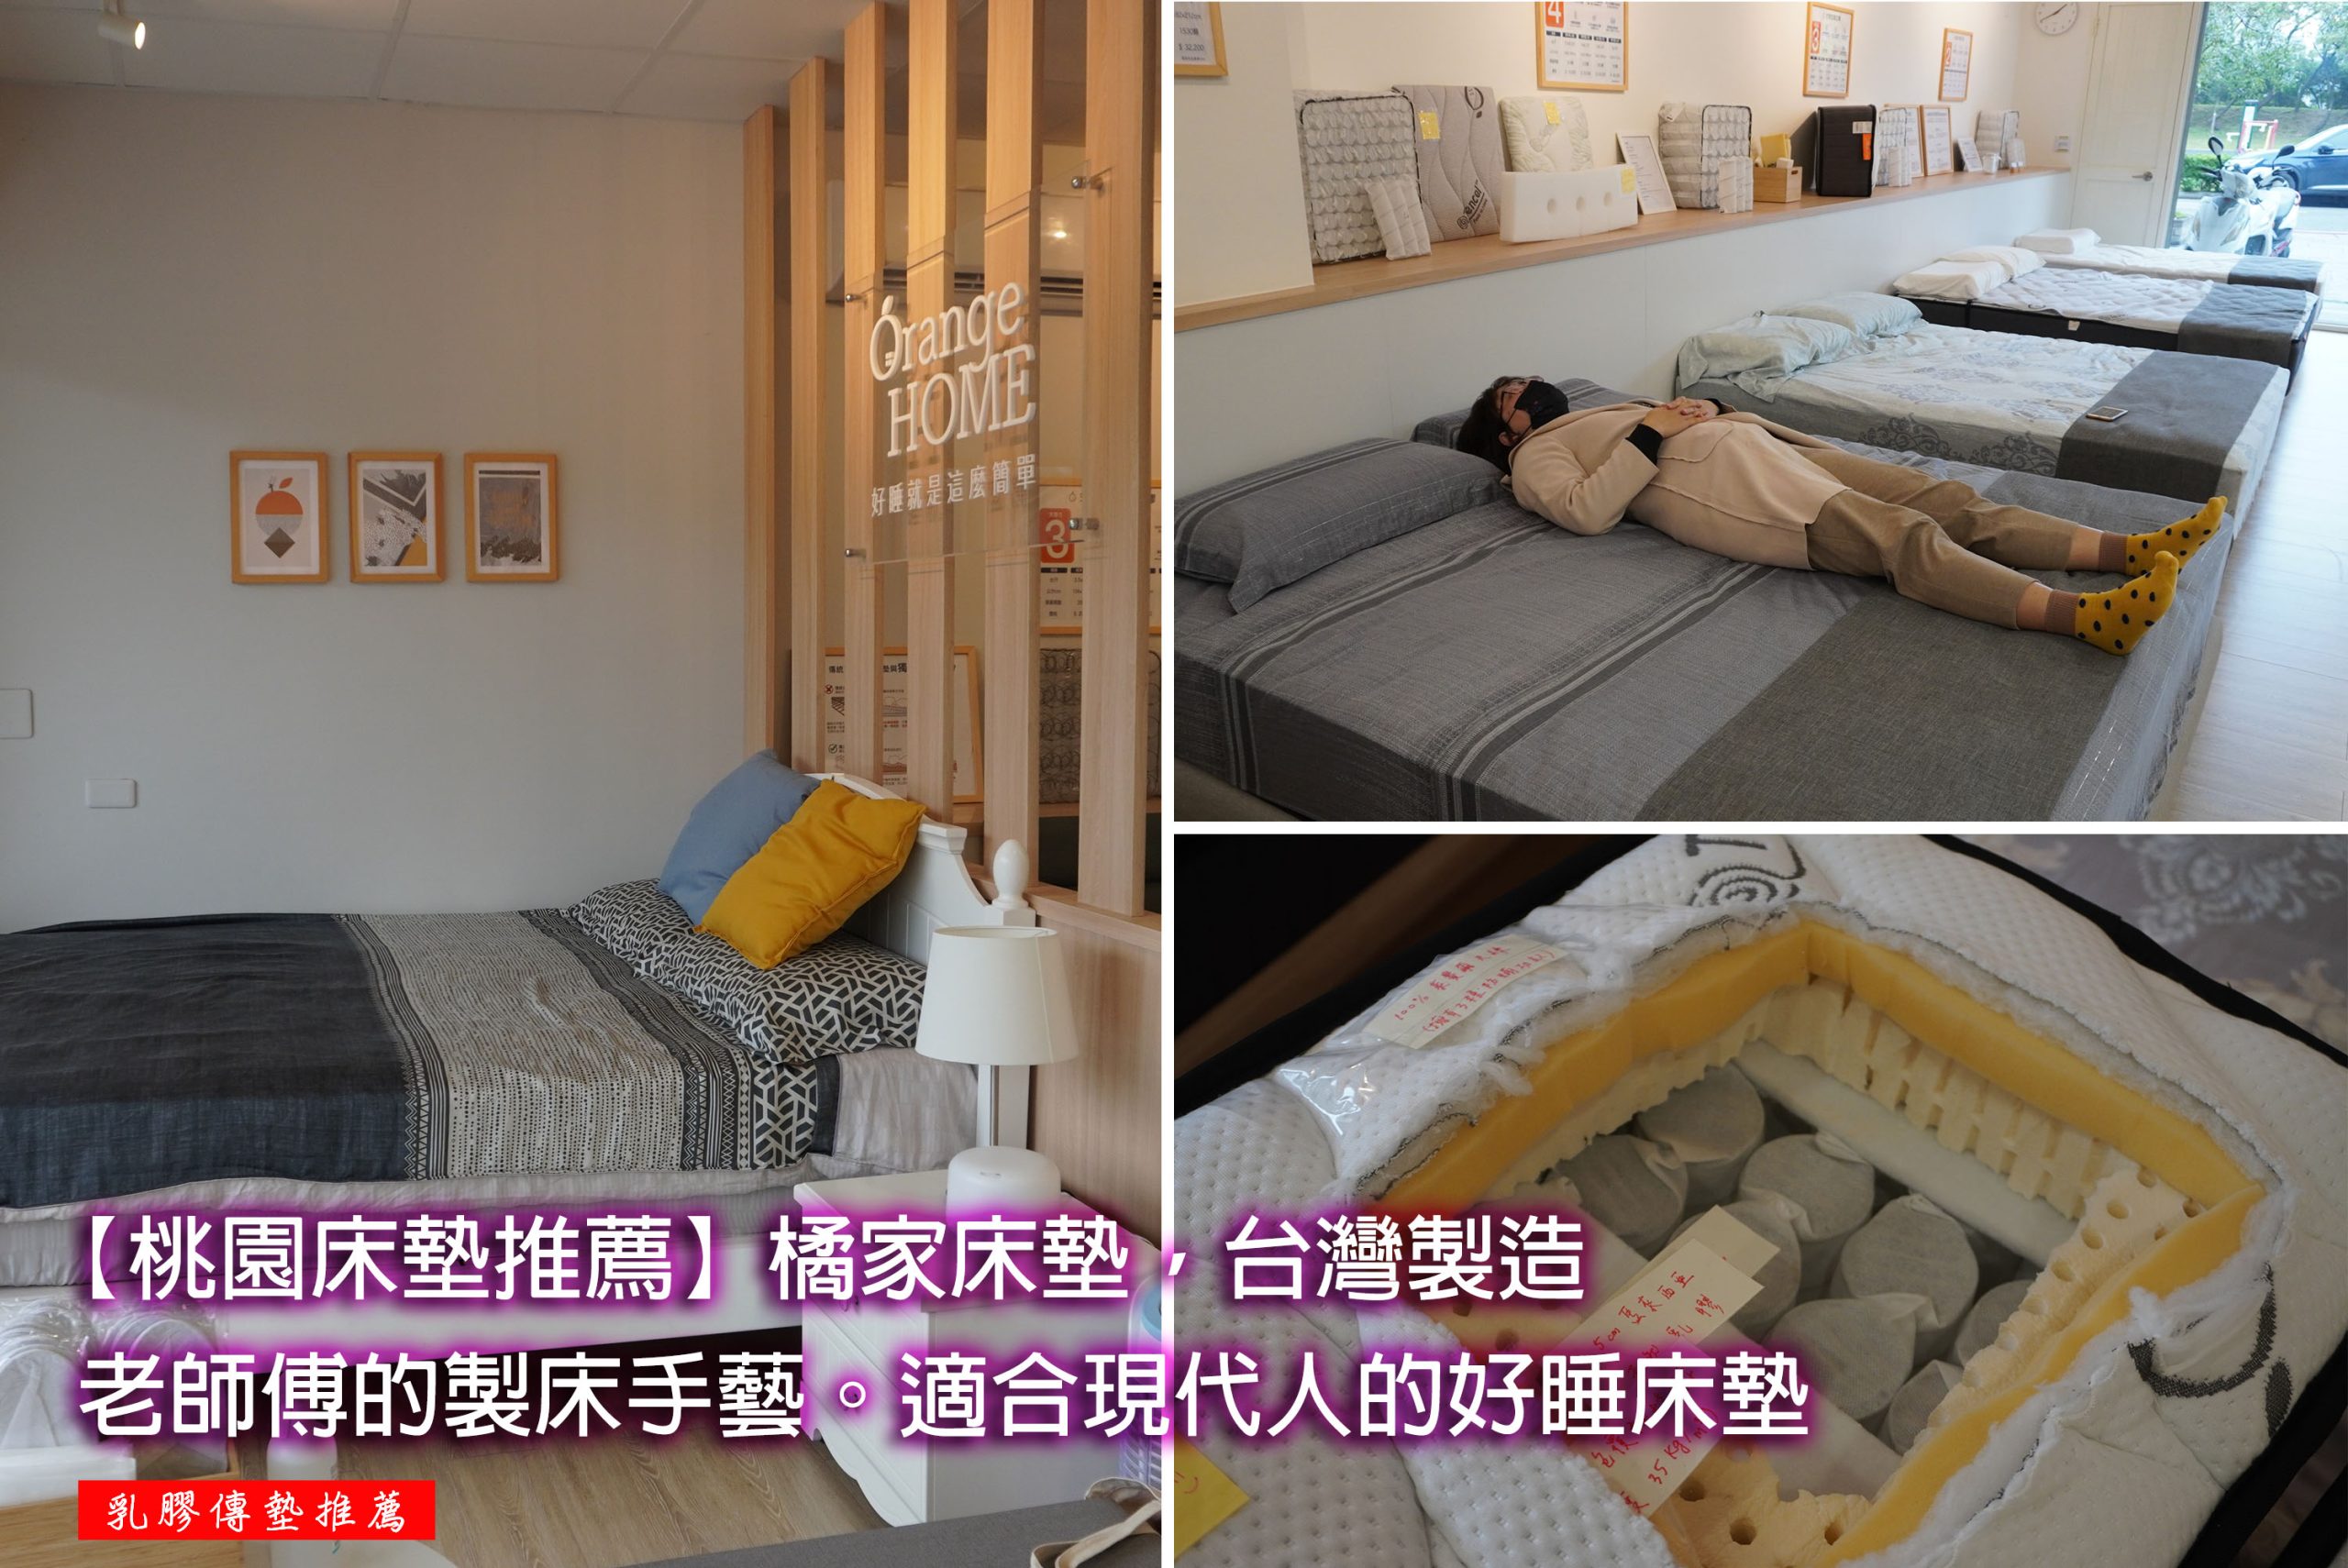 【桃園床墊推薦】橘家床墊，台灣製造，老師傅堅持的製床手藝。適合忙碌現代人的好睡床墊，中鋼品質證明，讓你睡眠舒適不悶熱